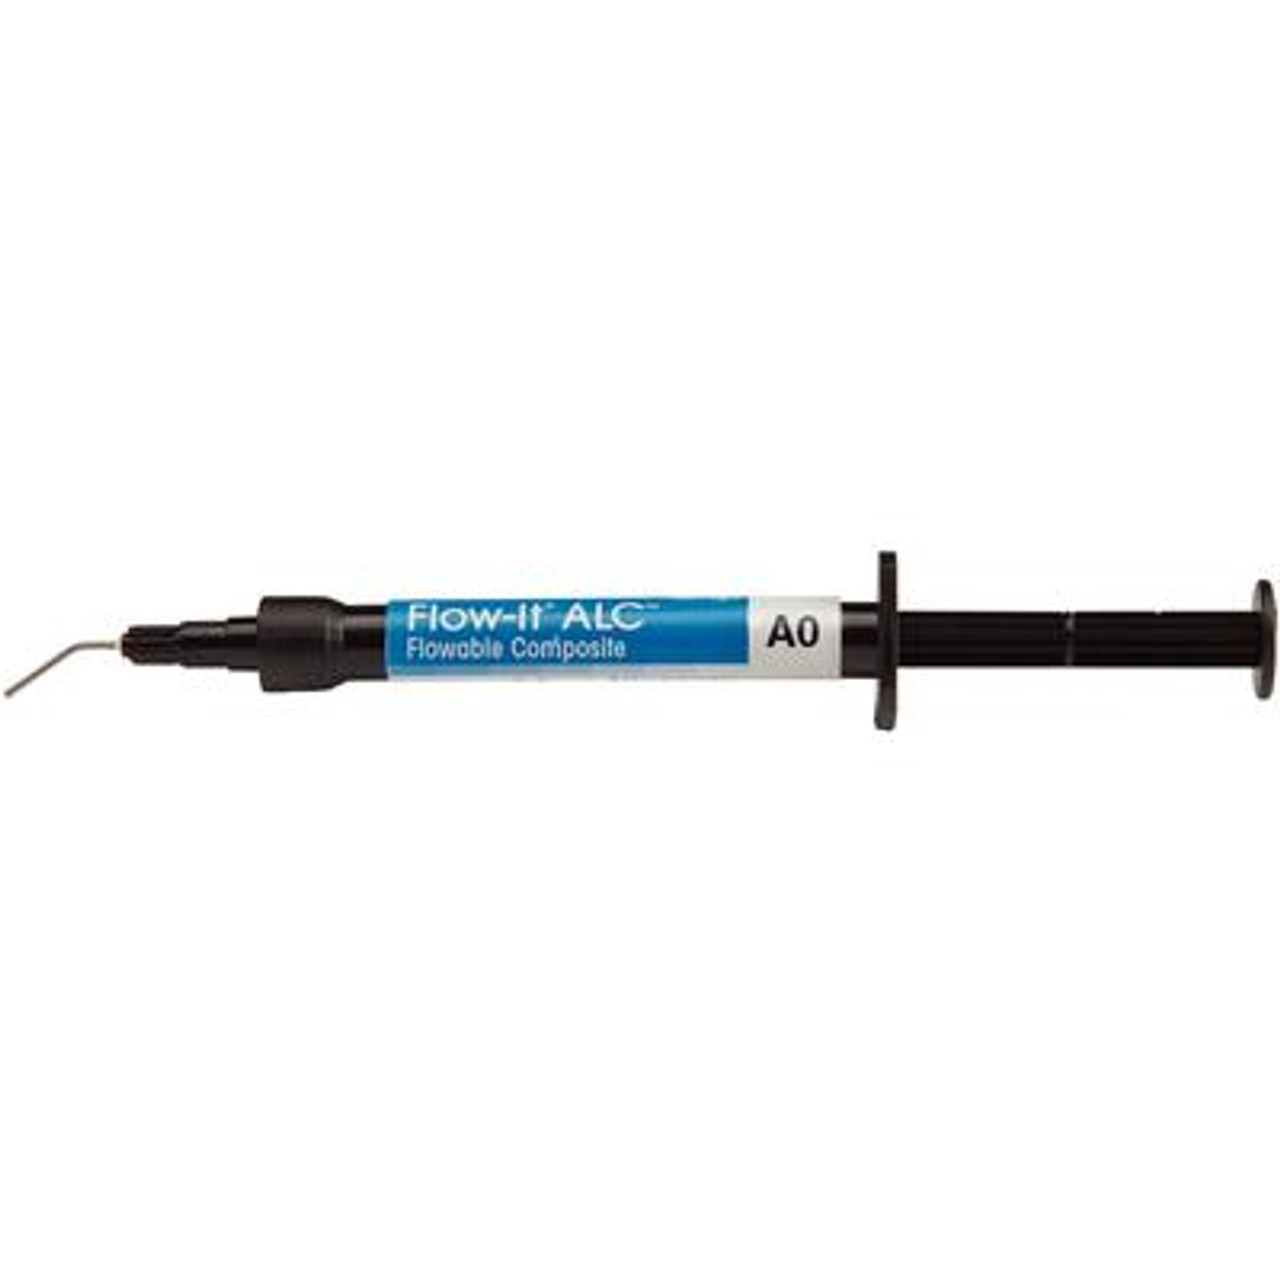 Pentron Flow-It ALC Flowable Composite A0 Syringe 4g & Tips